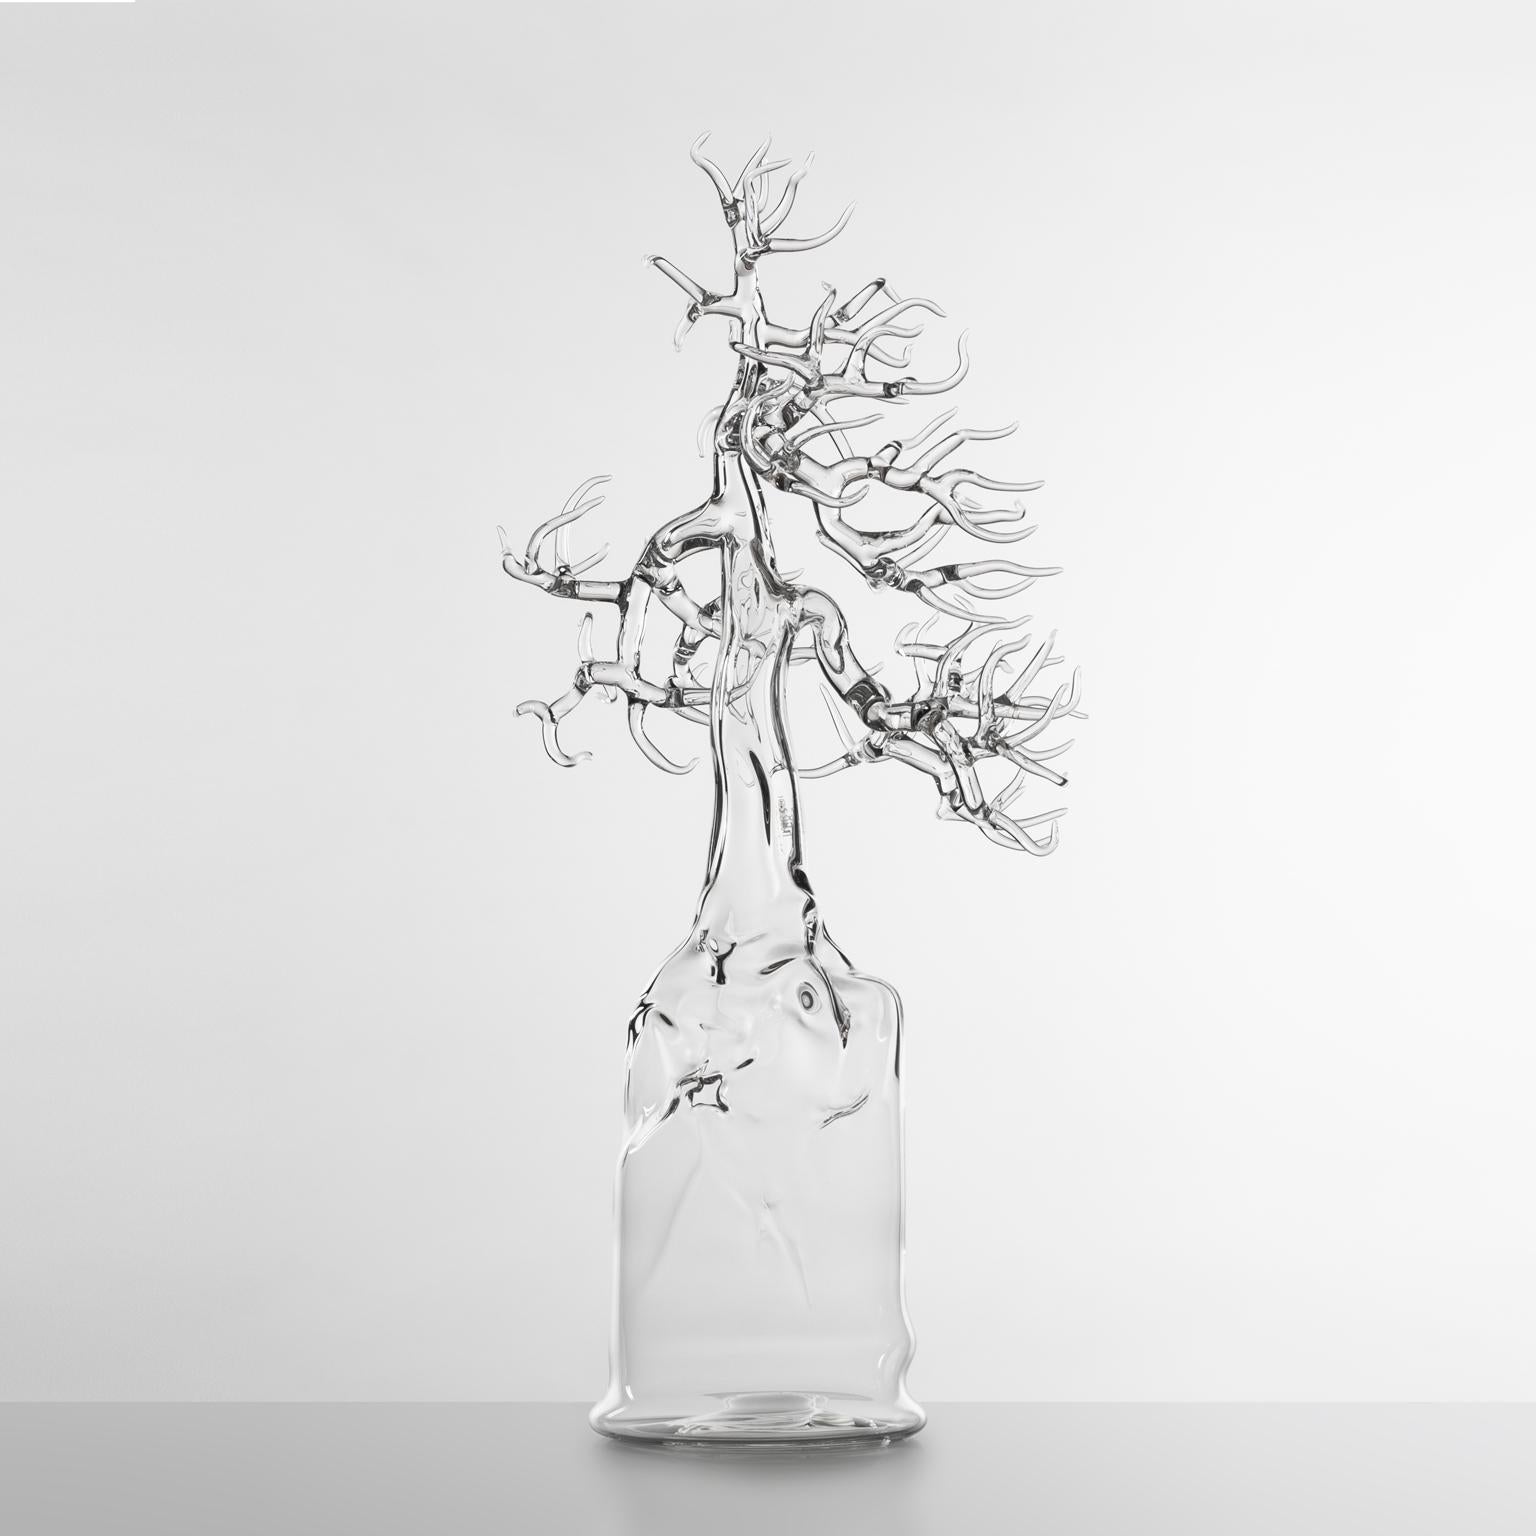 Italian Contemporary Glass Bonsai Hand Blown Glass Sculpture 2021 #04 Simone Crestani For Sale